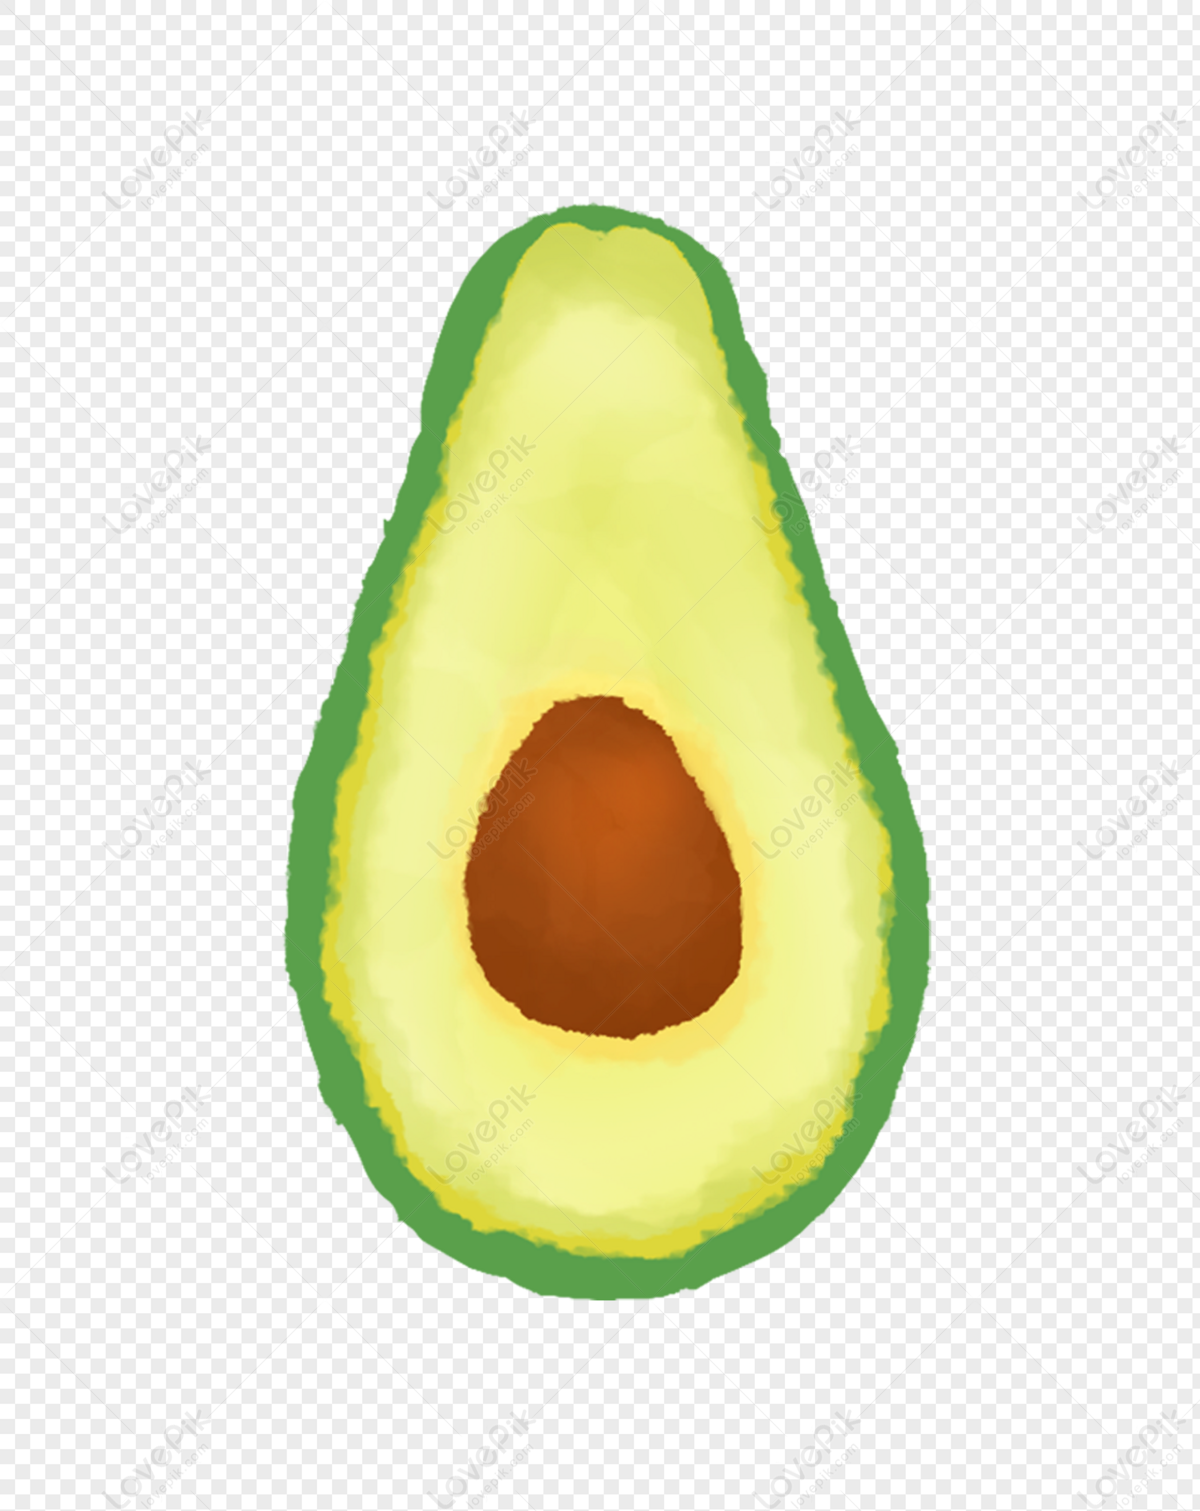 Avocado PNG: Hãy dễ dàng tạo ra những thiết kế tuyệt đẹp với các hình ảnh avocado PNG. Với nền trong suốt và đường viền chính xác, các hình ảnh này sẽ làm cho bất kỳ thiết kế nào trở nên thu hút hơn!